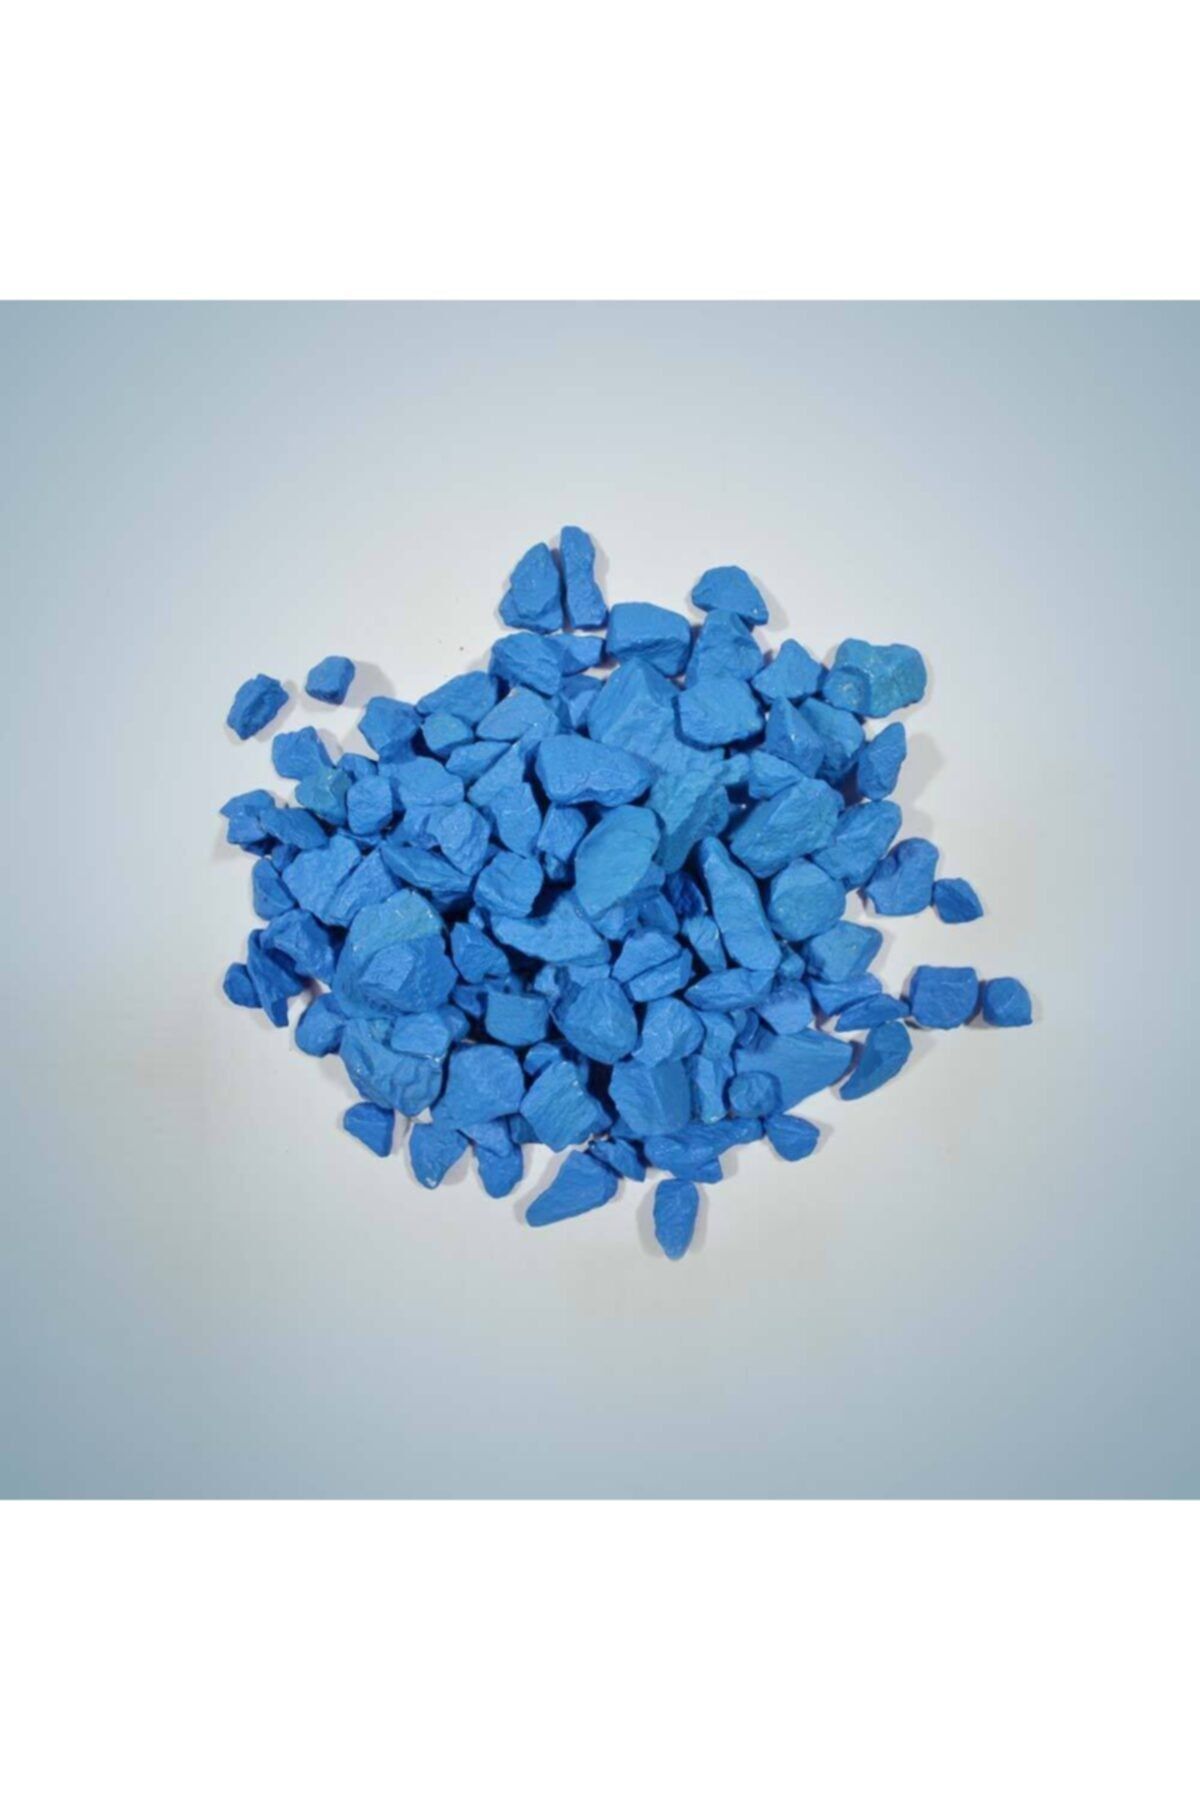 Aker Hediyelik Mavi Dekoratif Teraryum Taşı 1kg Renkli Saksı Akvaryum Çakıl Taşı El Işi Süsleme Malzemeleri